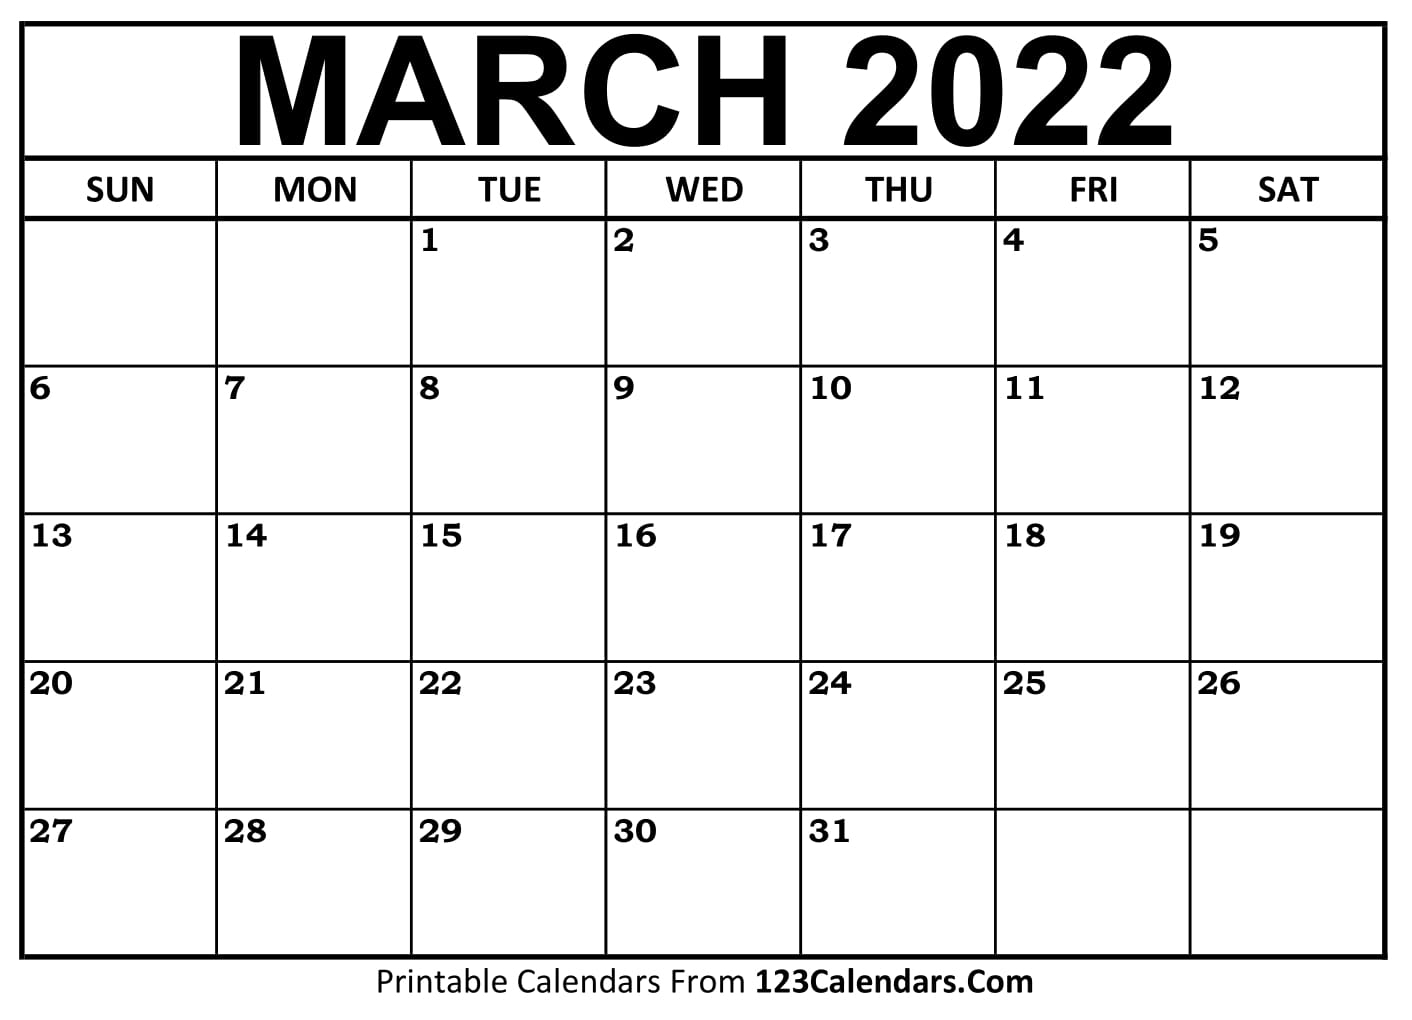 Printable March 2022 Calendar Templates 123Calendars